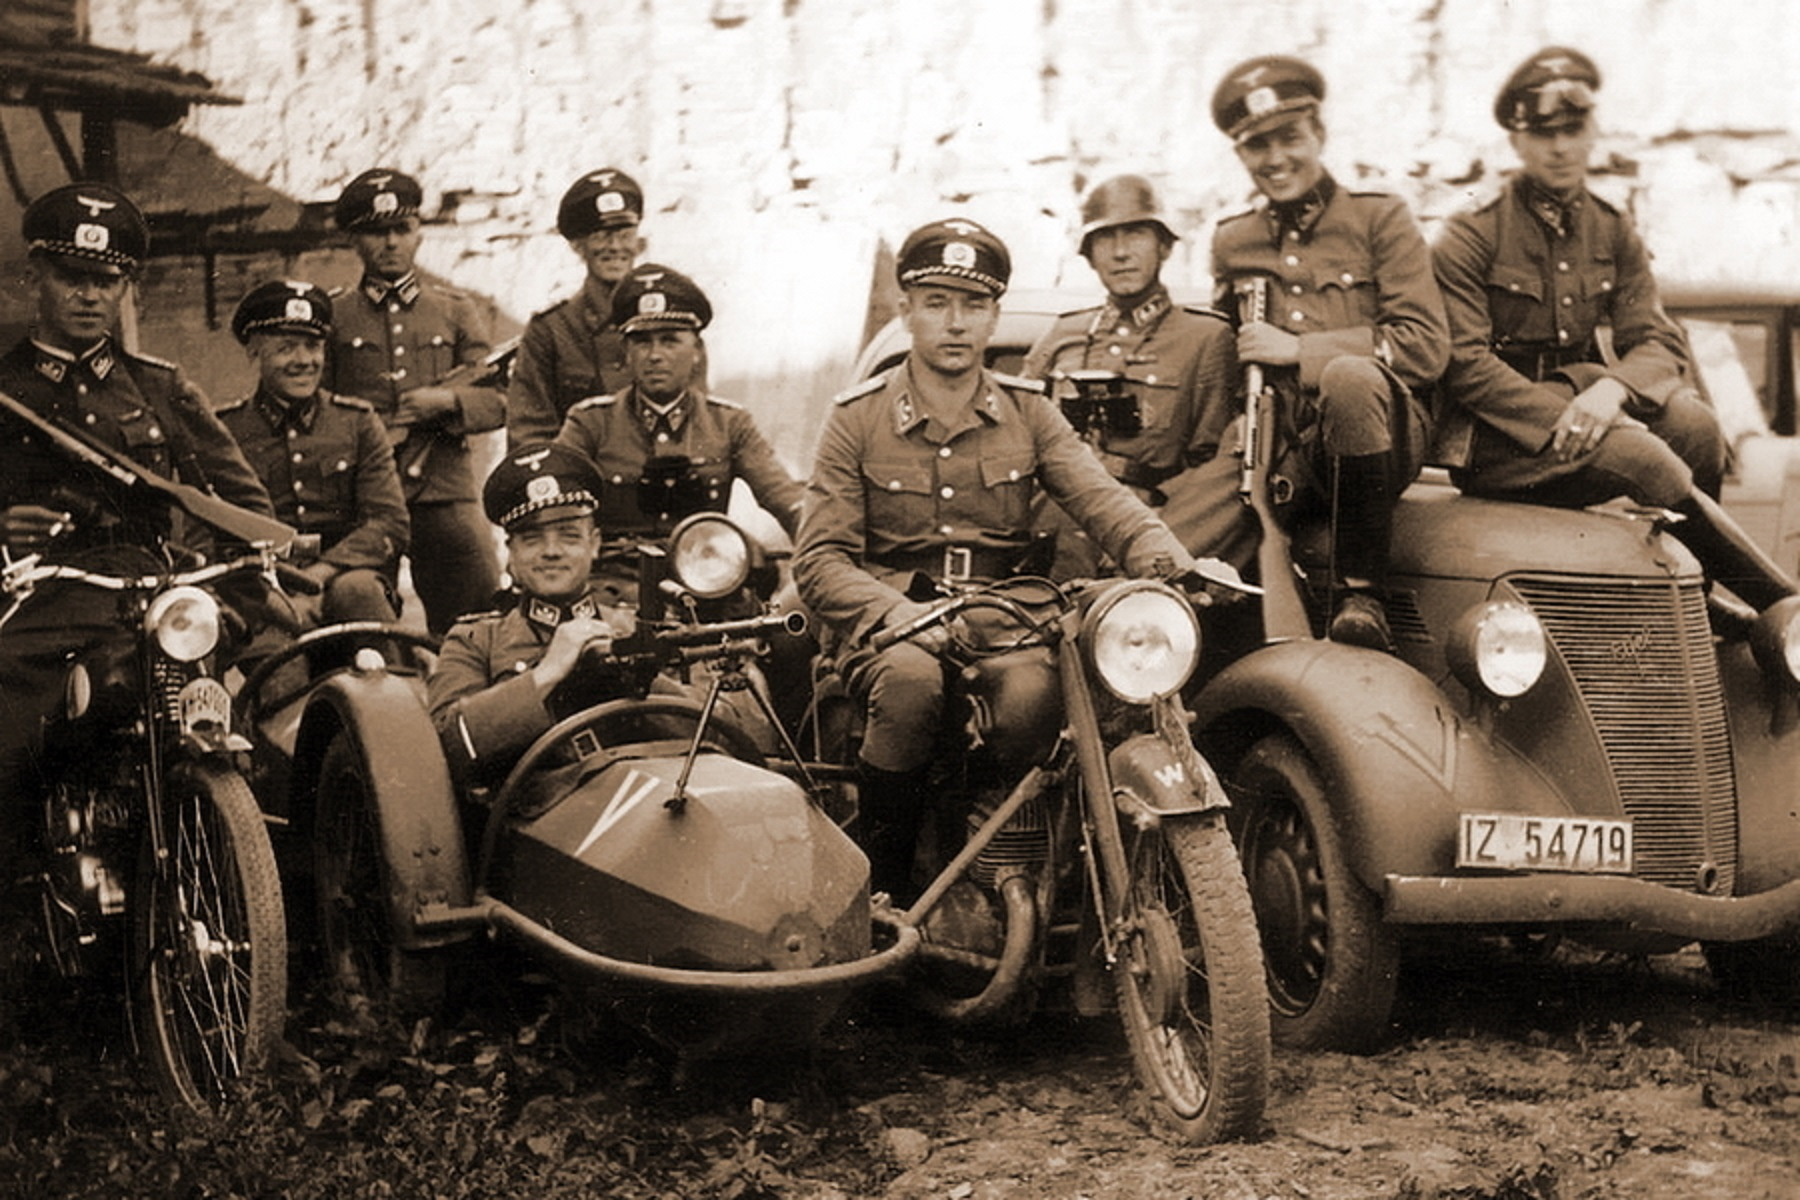 Мотоциклы немецкой армии 2 мировой войны 1941-1945